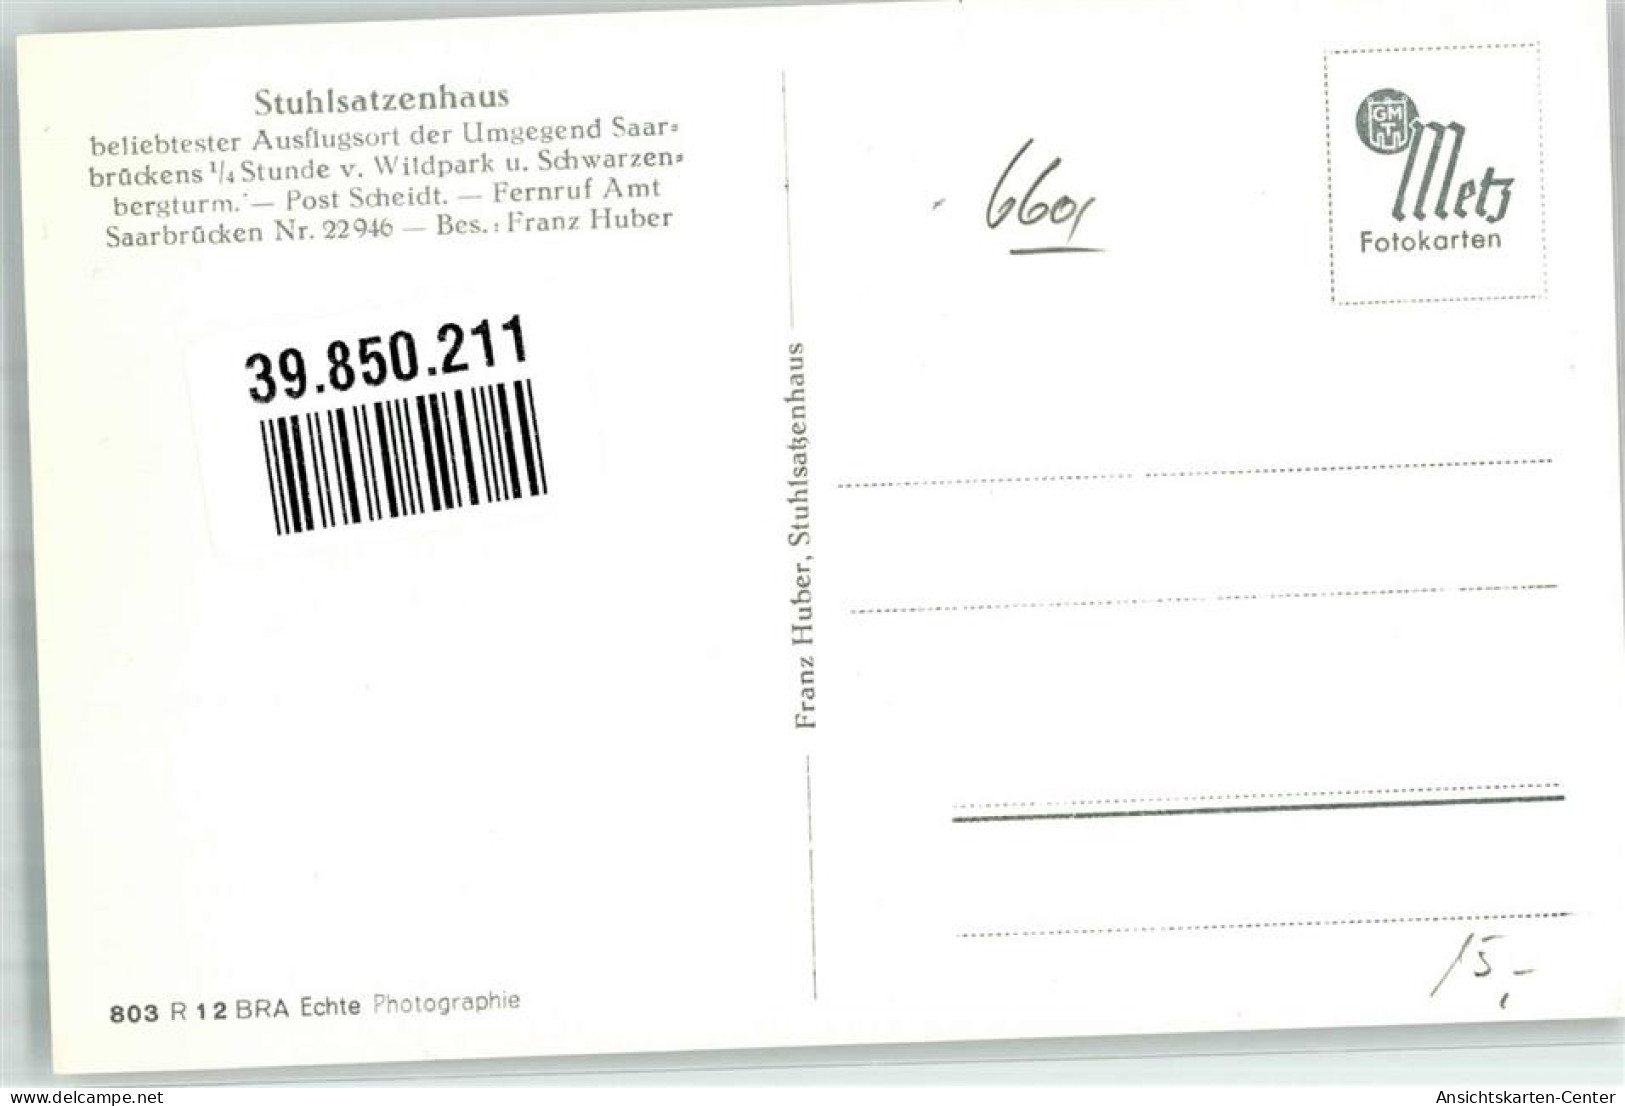 39850211 - Saarbruecken - Saarbruecken